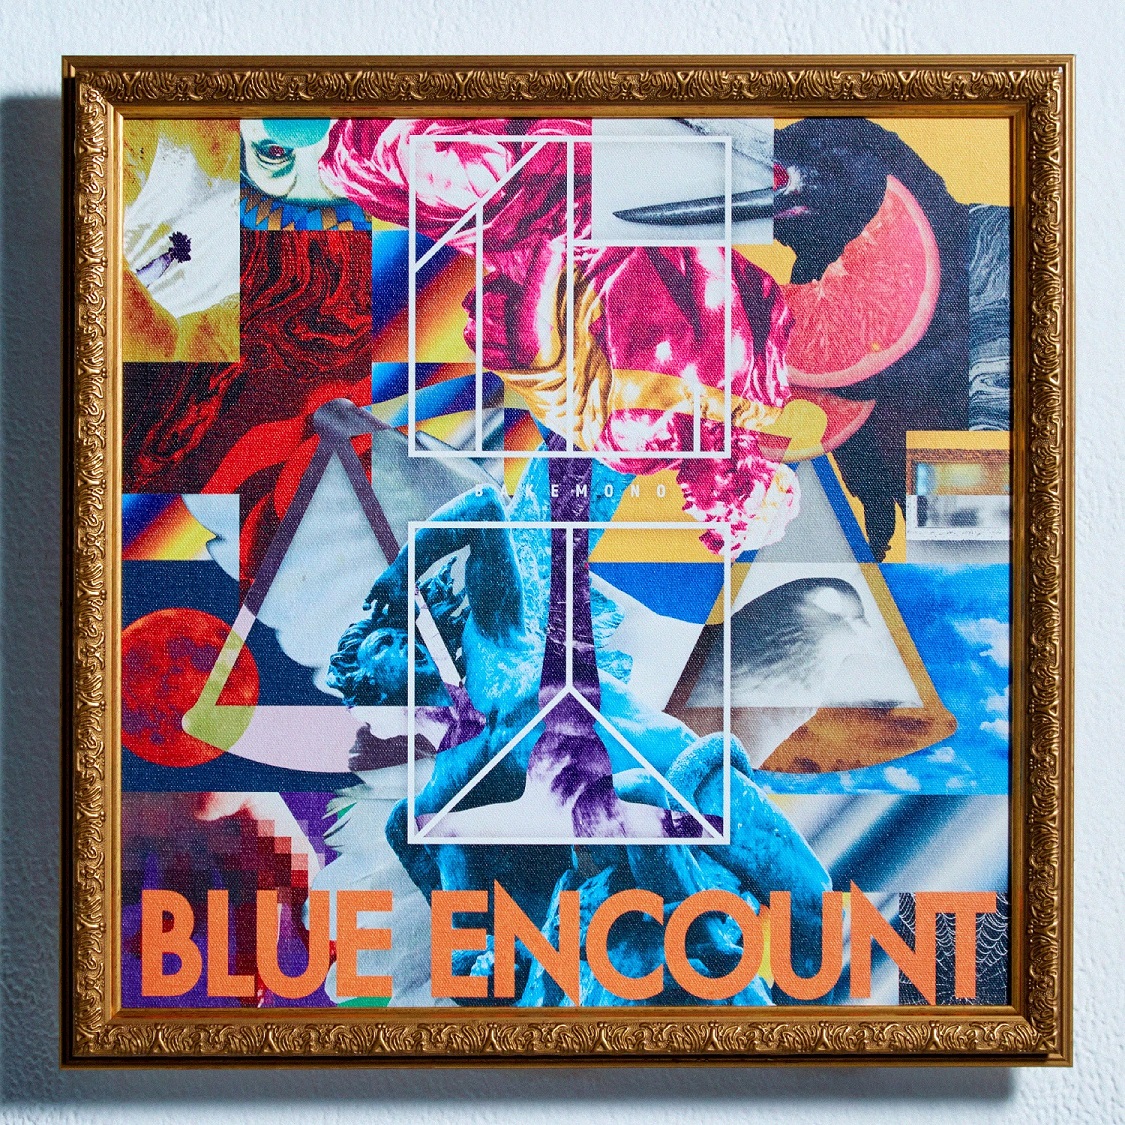 日本正規代理店品 BLUE ENCOUNT ≒ 初回生産限定盤CDDVD cominox.com.mx